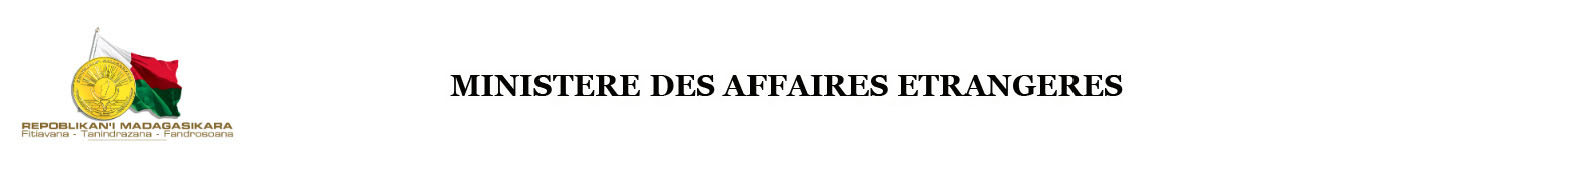 MINISTERE DES AFFAIRES ETRANGERES DE MADAGASCAR